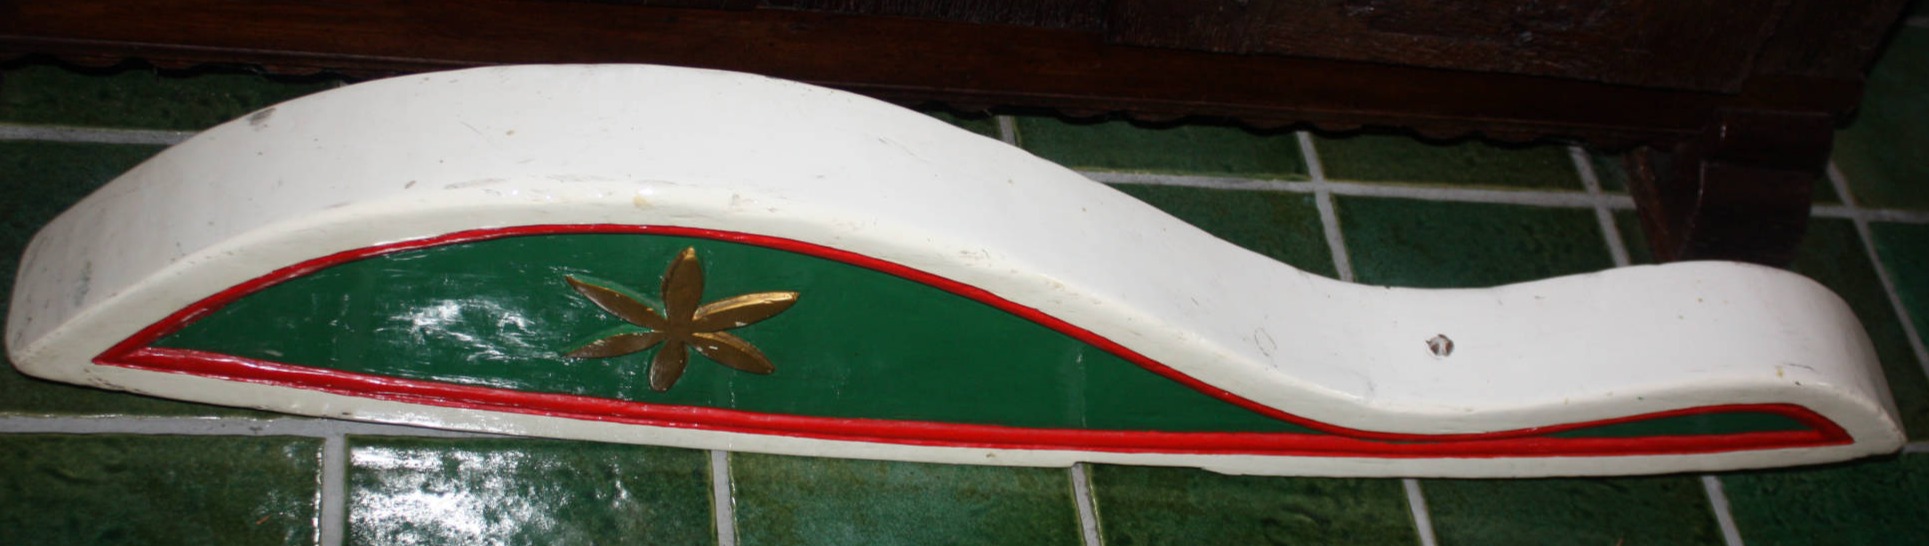 Alte bemalte Ruderpinne von einem Segelschiff, Länge 107 cm, Höhe 21 cm, Breite 9 cm